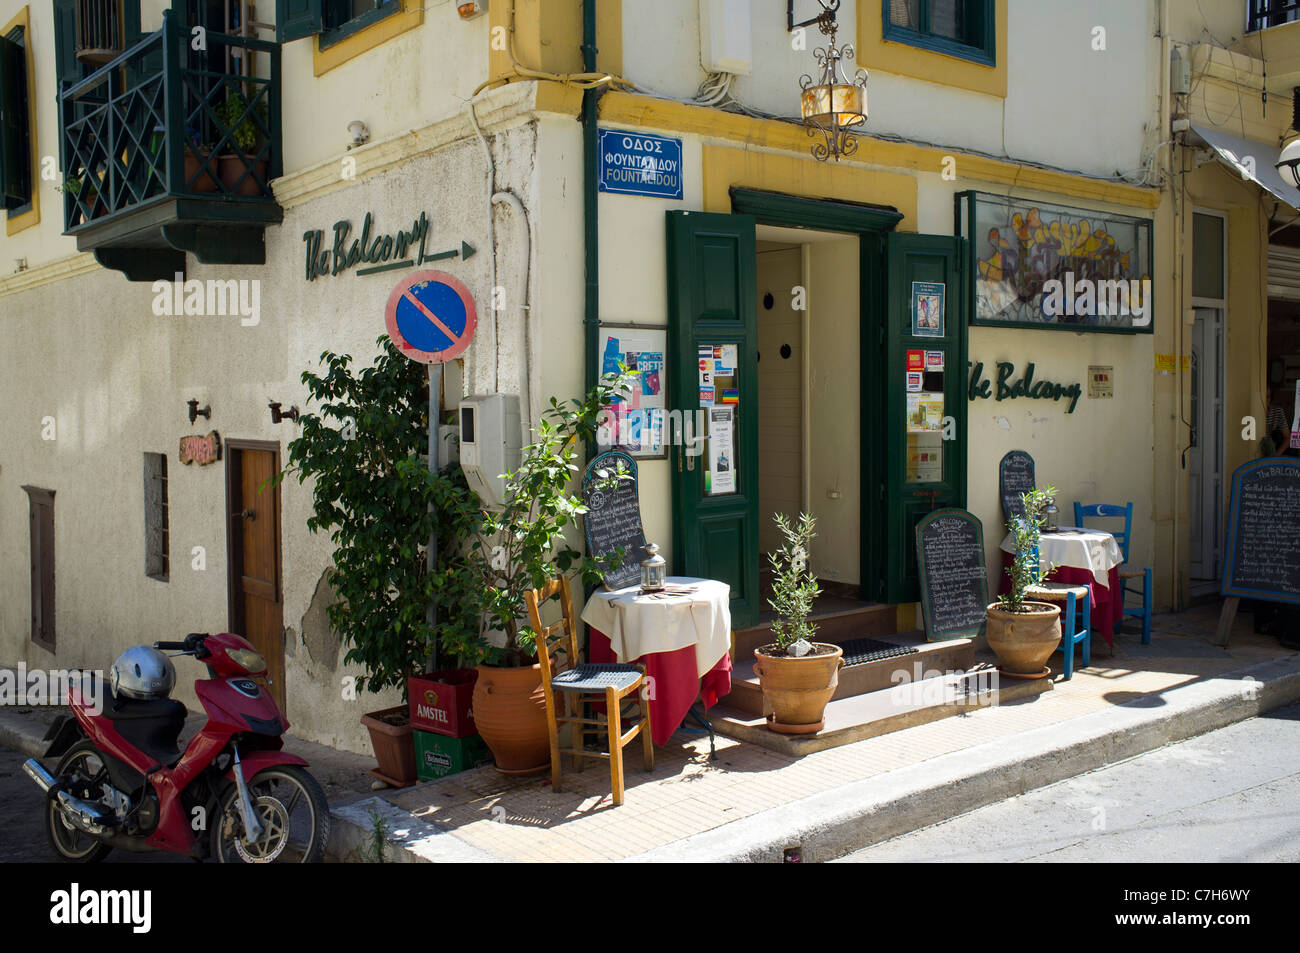 Un restaurant appelé Le Balcon dans une rue calme au large de la mer à Sitre sur l'île grecque de Crète Banque D'Images